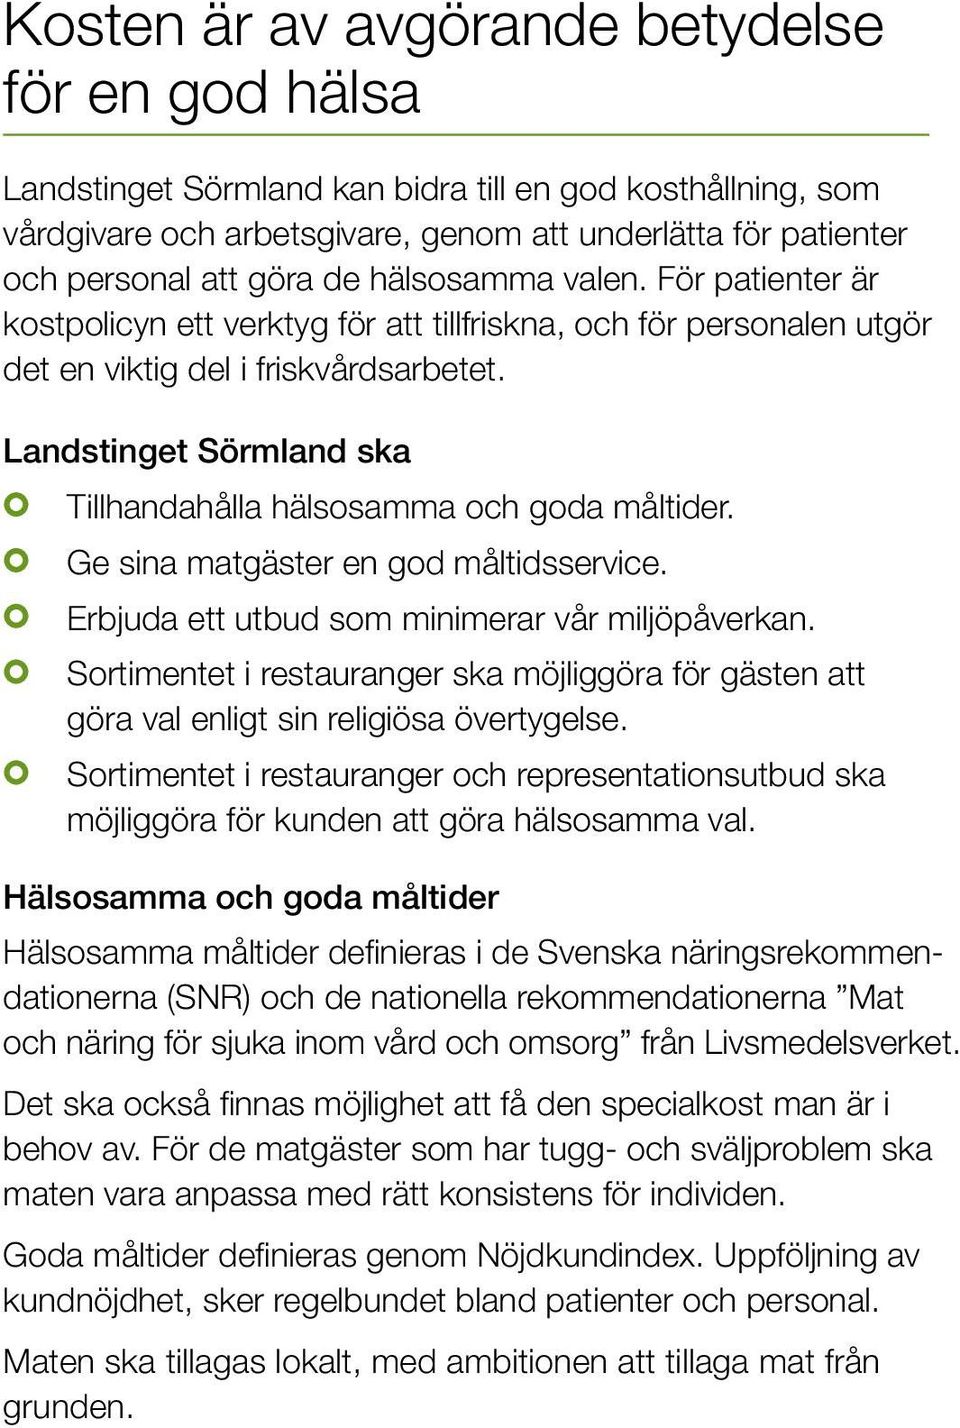 Landstinget Sörmland ska Tillhandahålla hälsosamma och goda måltider. Ge sina matgäster en god måltidsservice. Erbjuda ett utbud som minimerar vår miljöpåverkan.